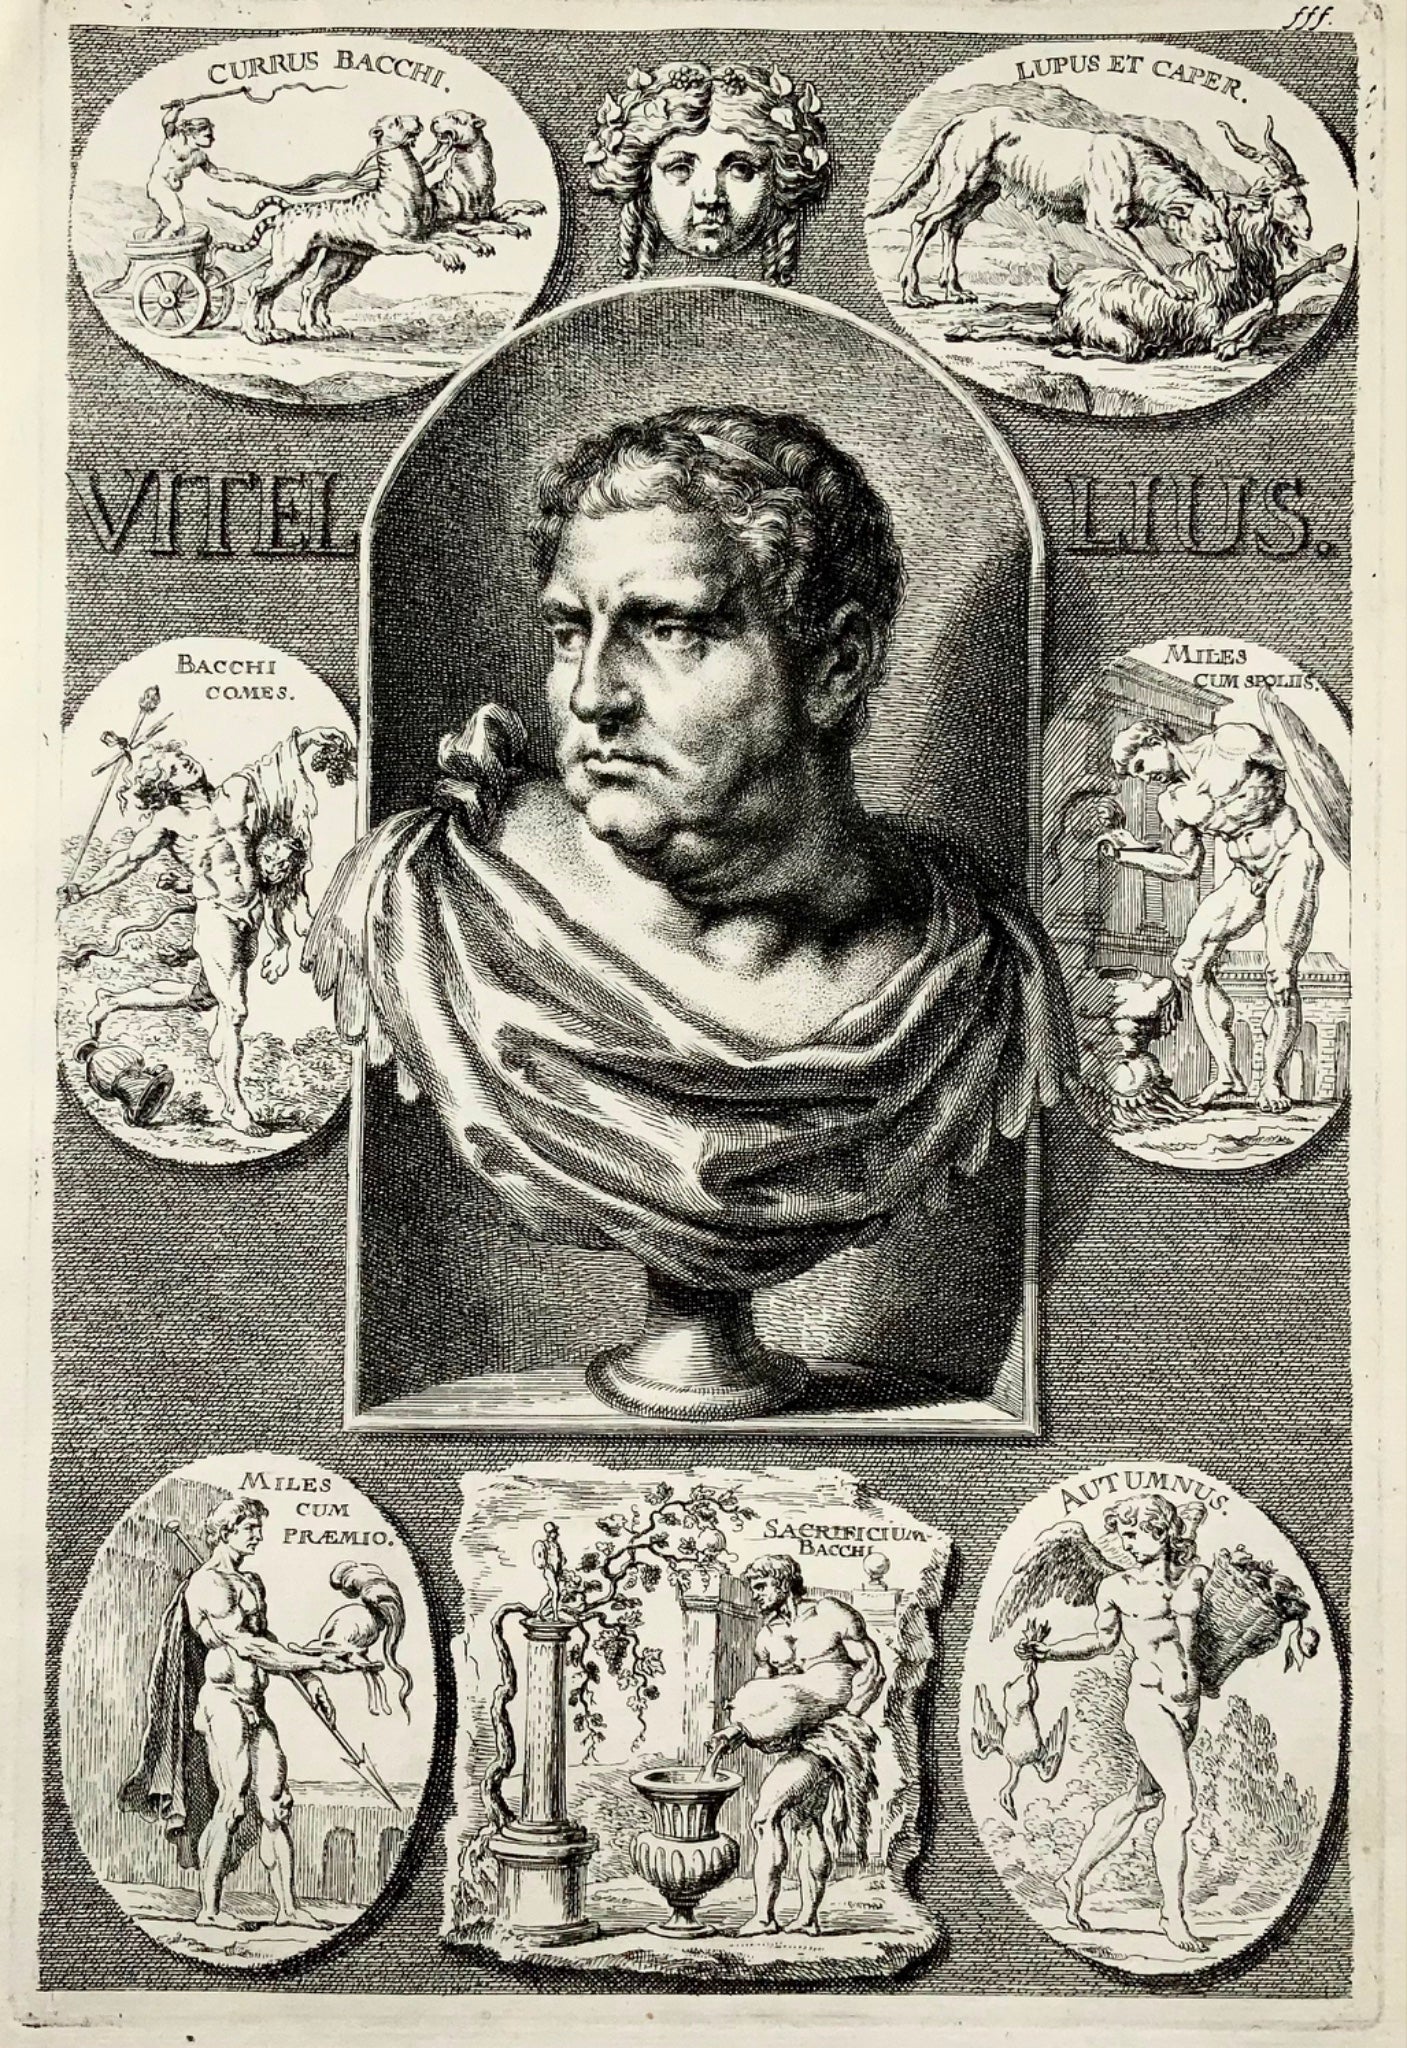 1676 EMPEREUR VITELLIUS GC Eimmart 1638-1705 d'après la gravure in-folio de Sandrart